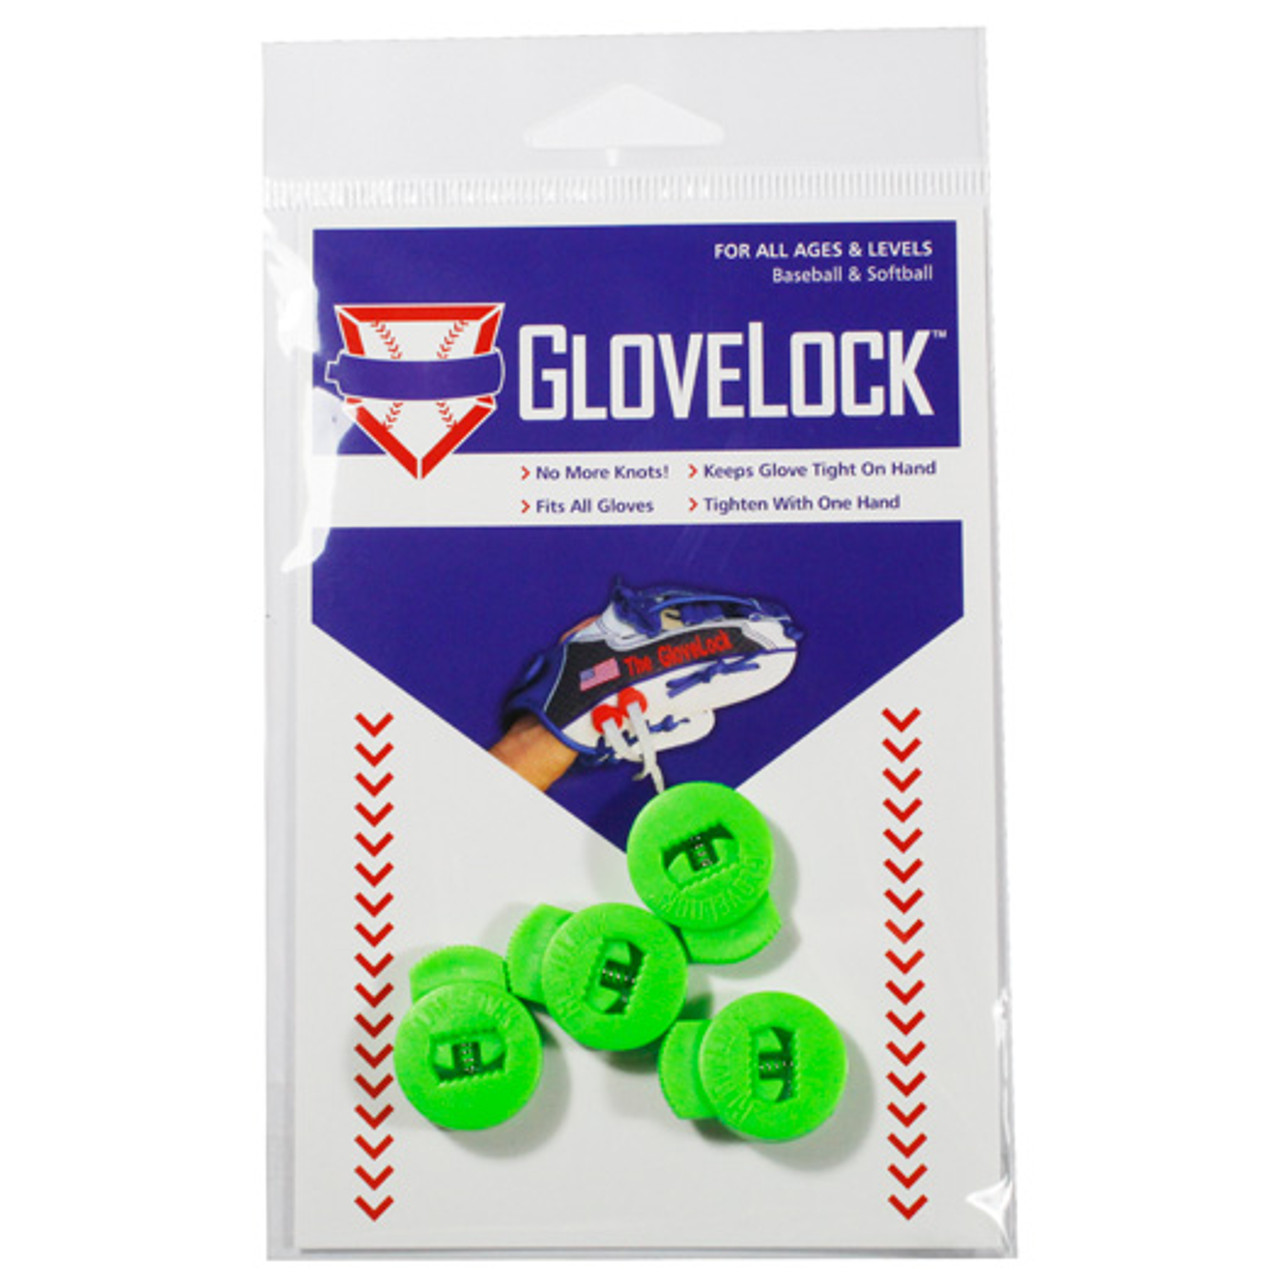 GloveLock-4 Pack - Bases Loaded